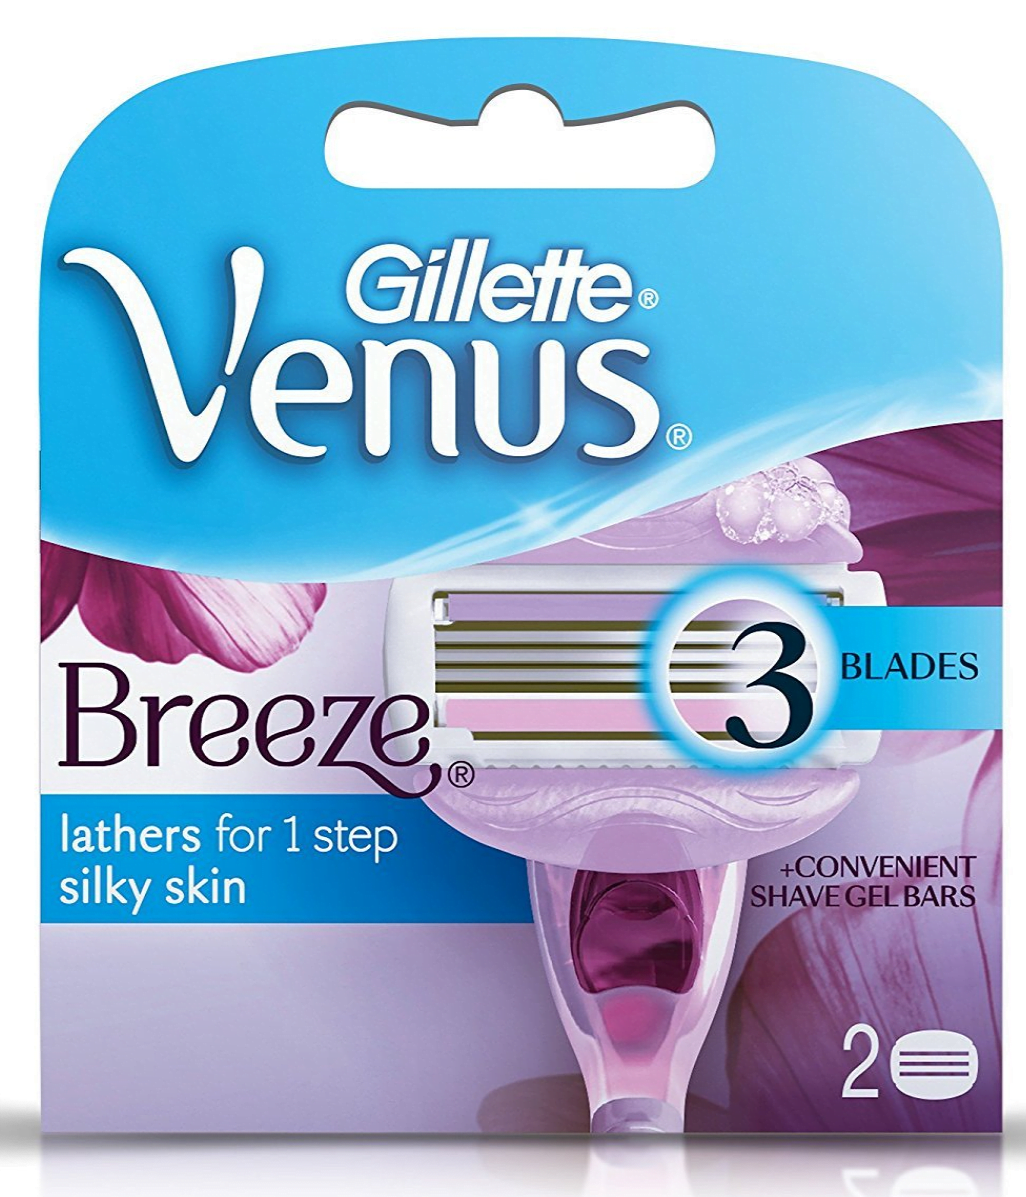 Gillette Venus Breeze Razor for Women